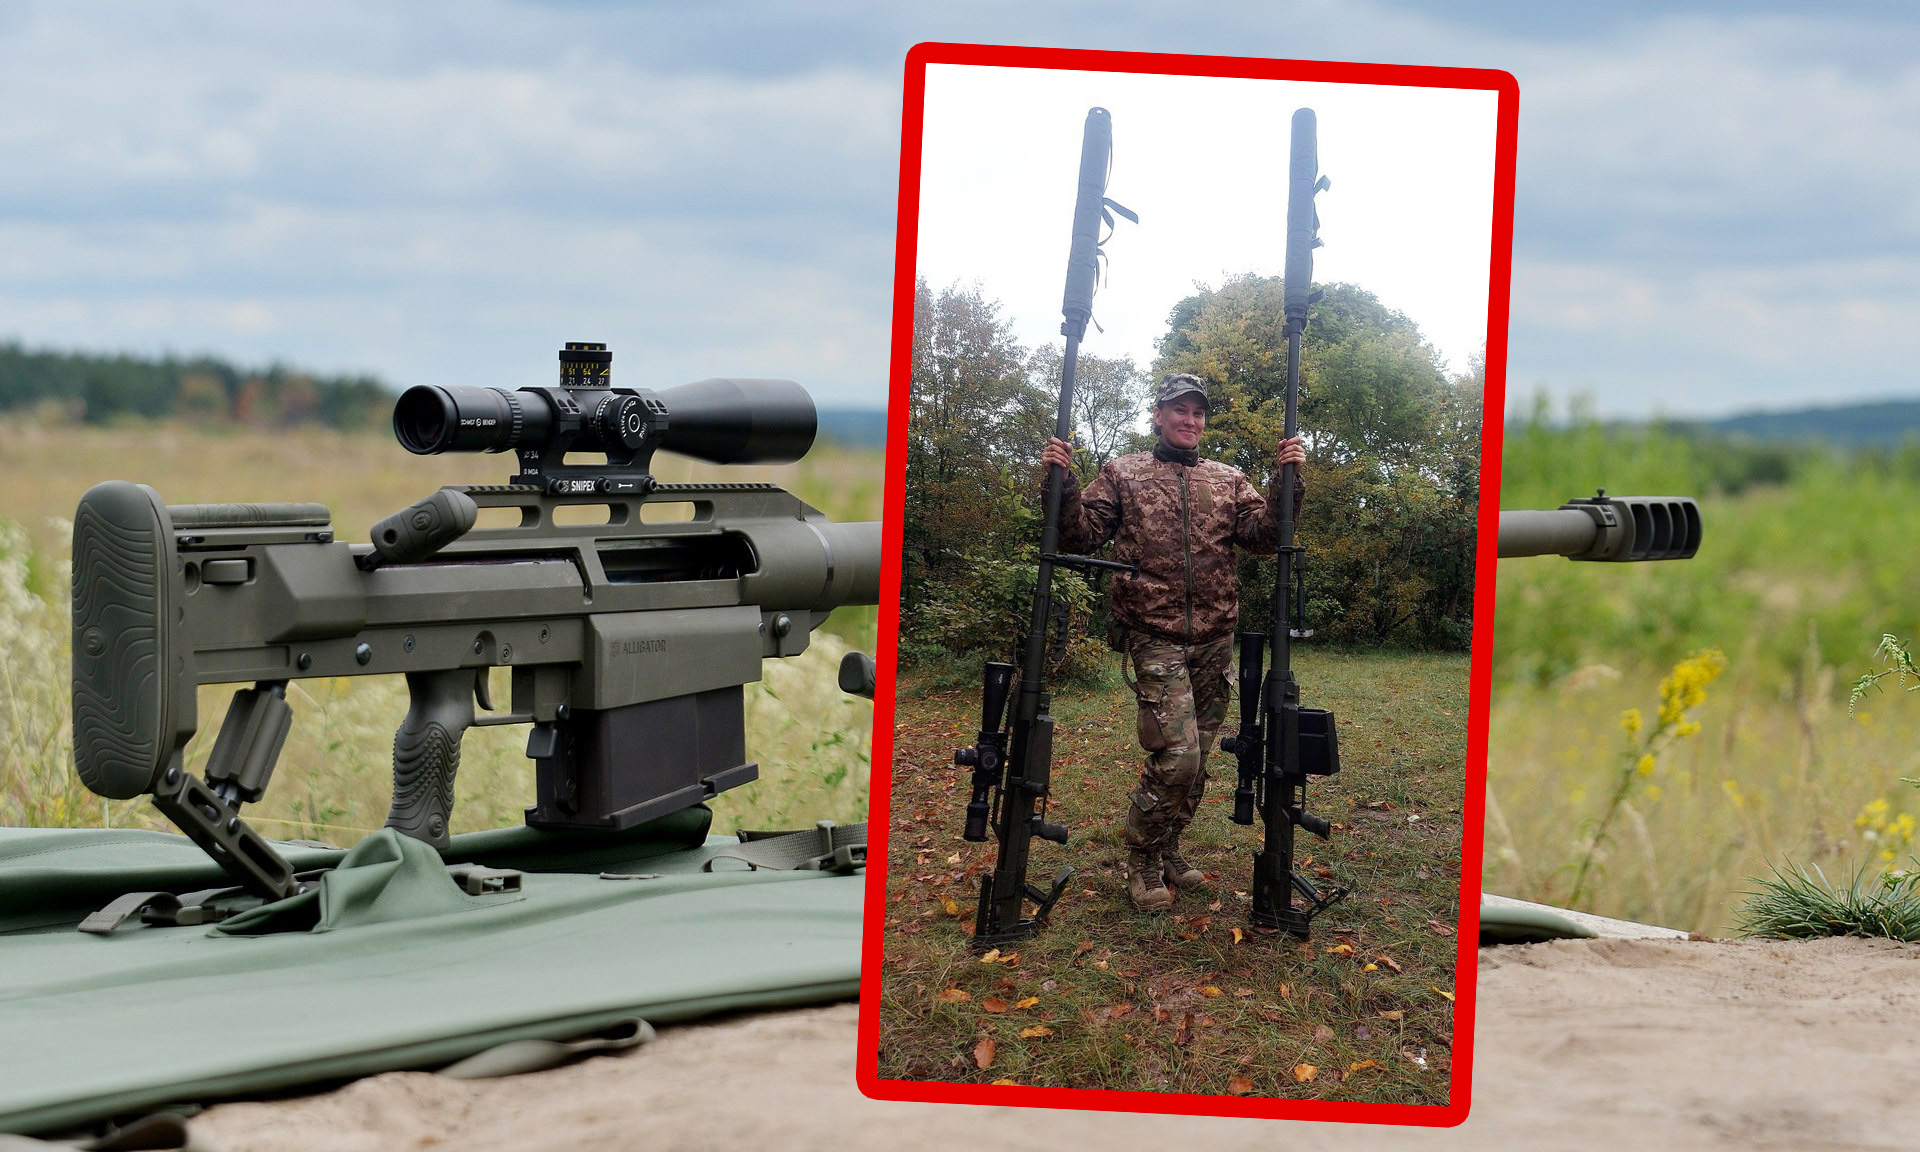 Le forze armate ucraine hanno mostrato di aver sparato a un carro armato con un fucile Snipex Alligator ucraino da una distanza di 2050 metri.